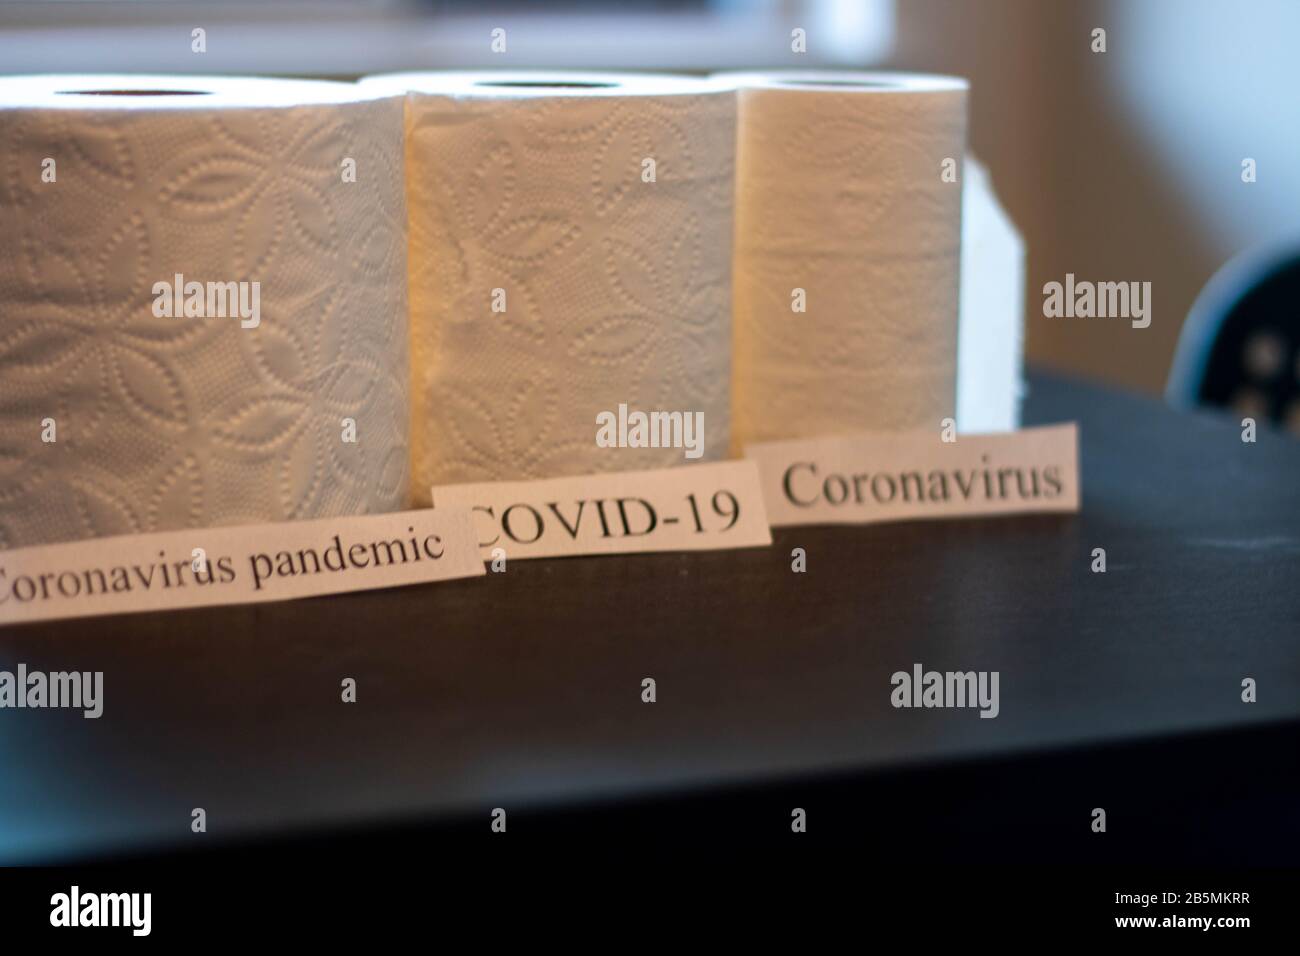 Coronavirus à côté de rouleaux de papier toilette. Thème de l'approvisionnement sur les fournitures Banque D'Images